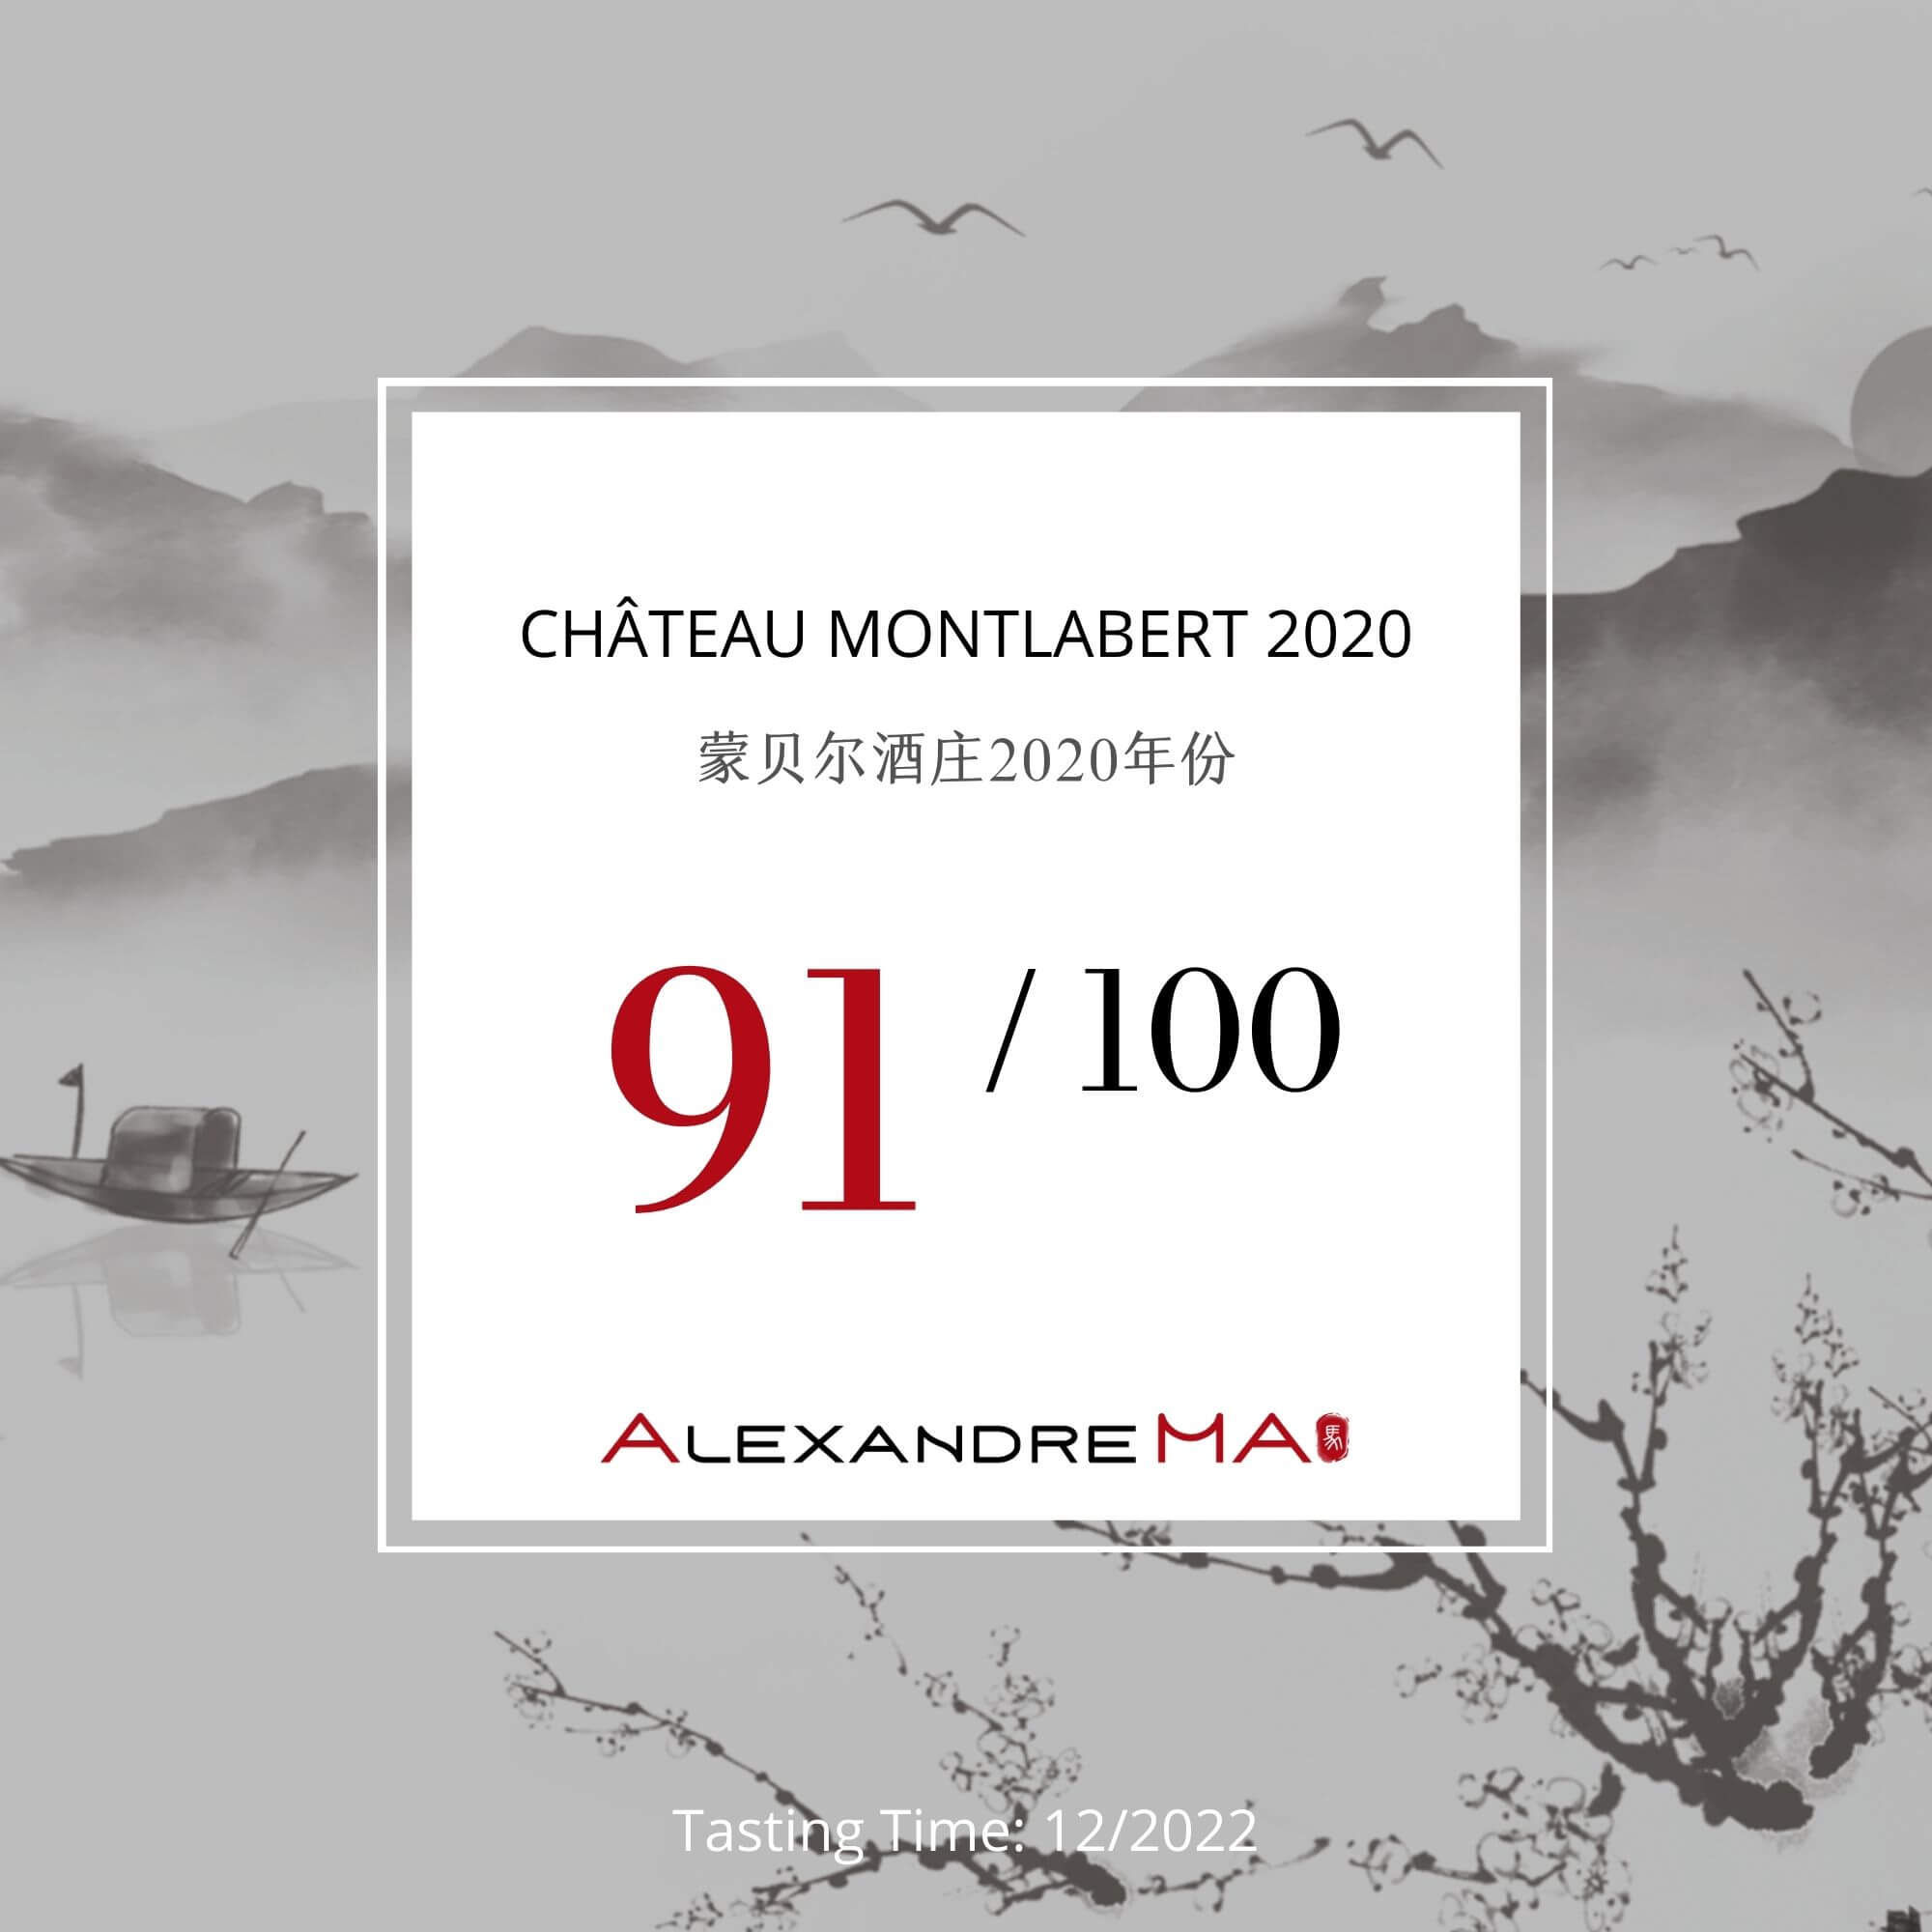 Château Montlabert 2020 - Alexandre MA